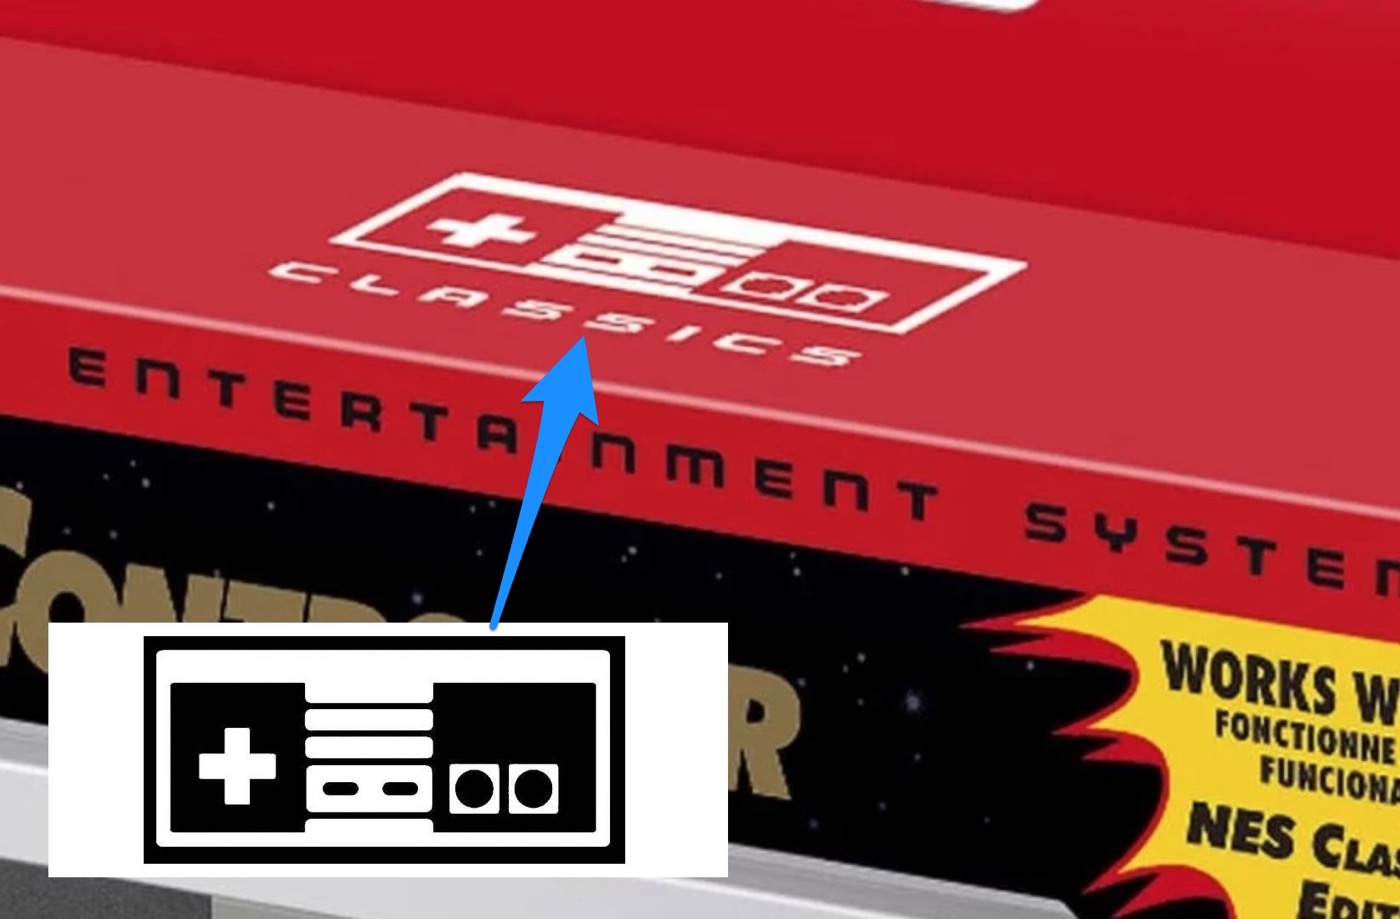 ミニ Nintendo64 の登場に一歩近づいた コントローラー画像の商標が正式に登録される 気になる 記になる